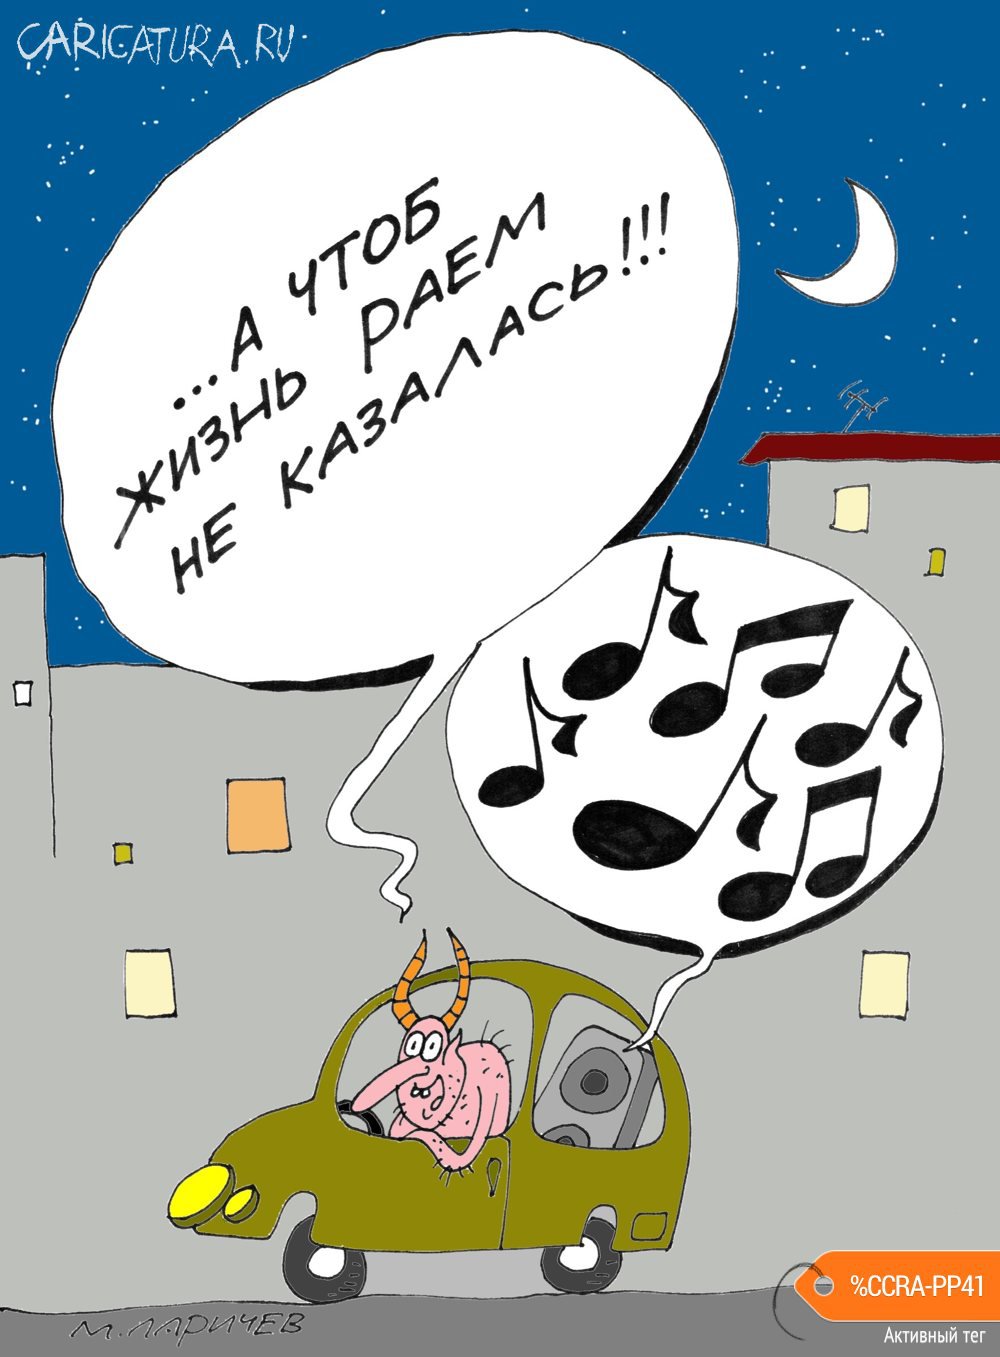 Карикатура "Тишина", Михаил Ларичев